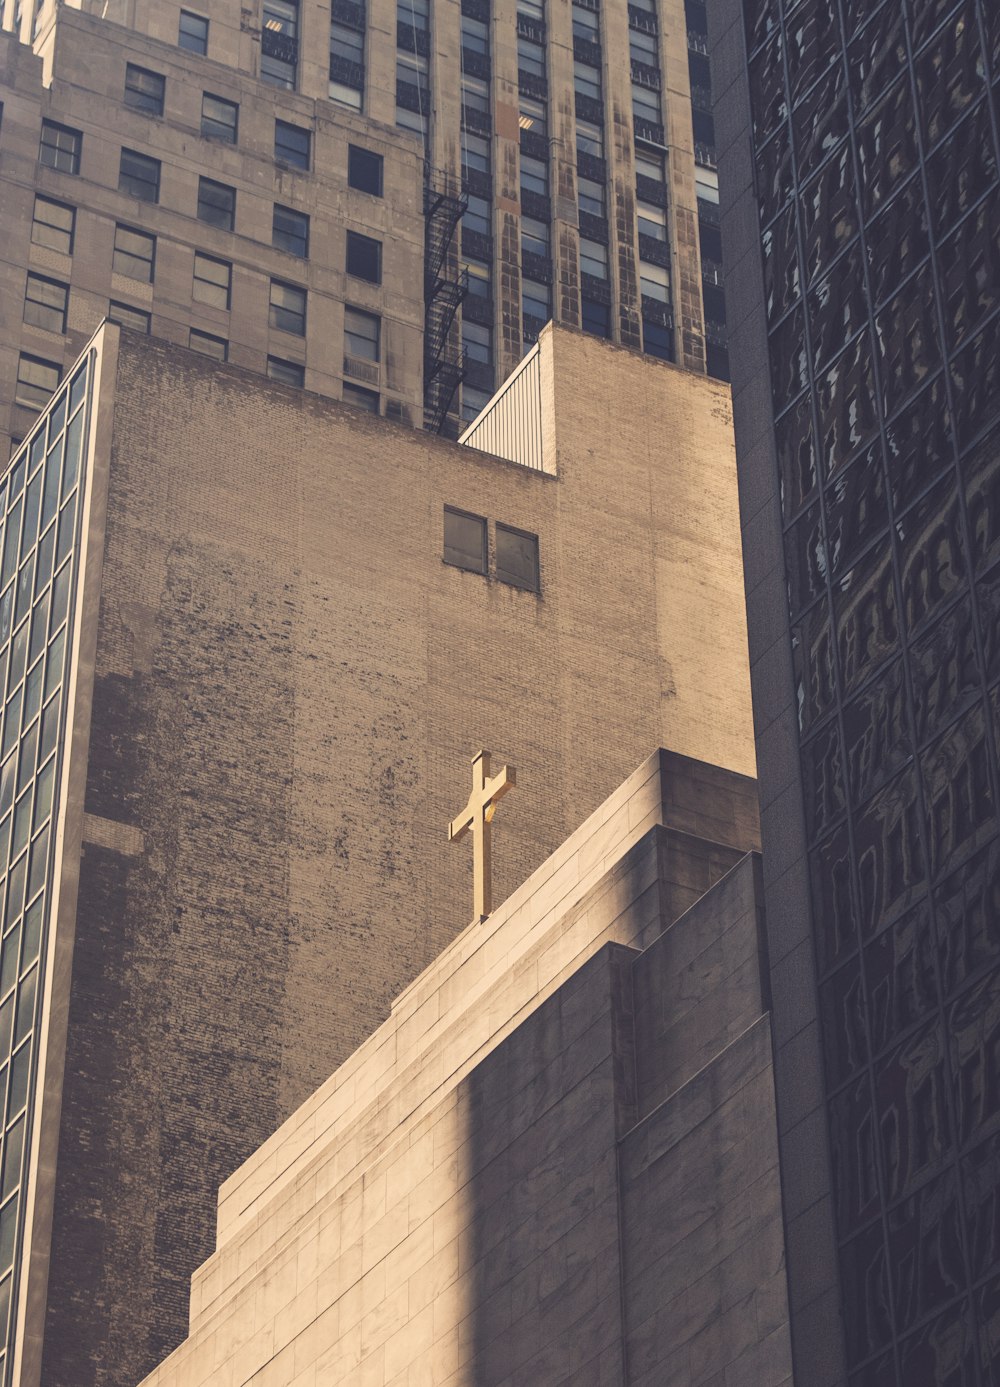 Photographie en contre-plongée d’un bâtiment en béton avec une croix